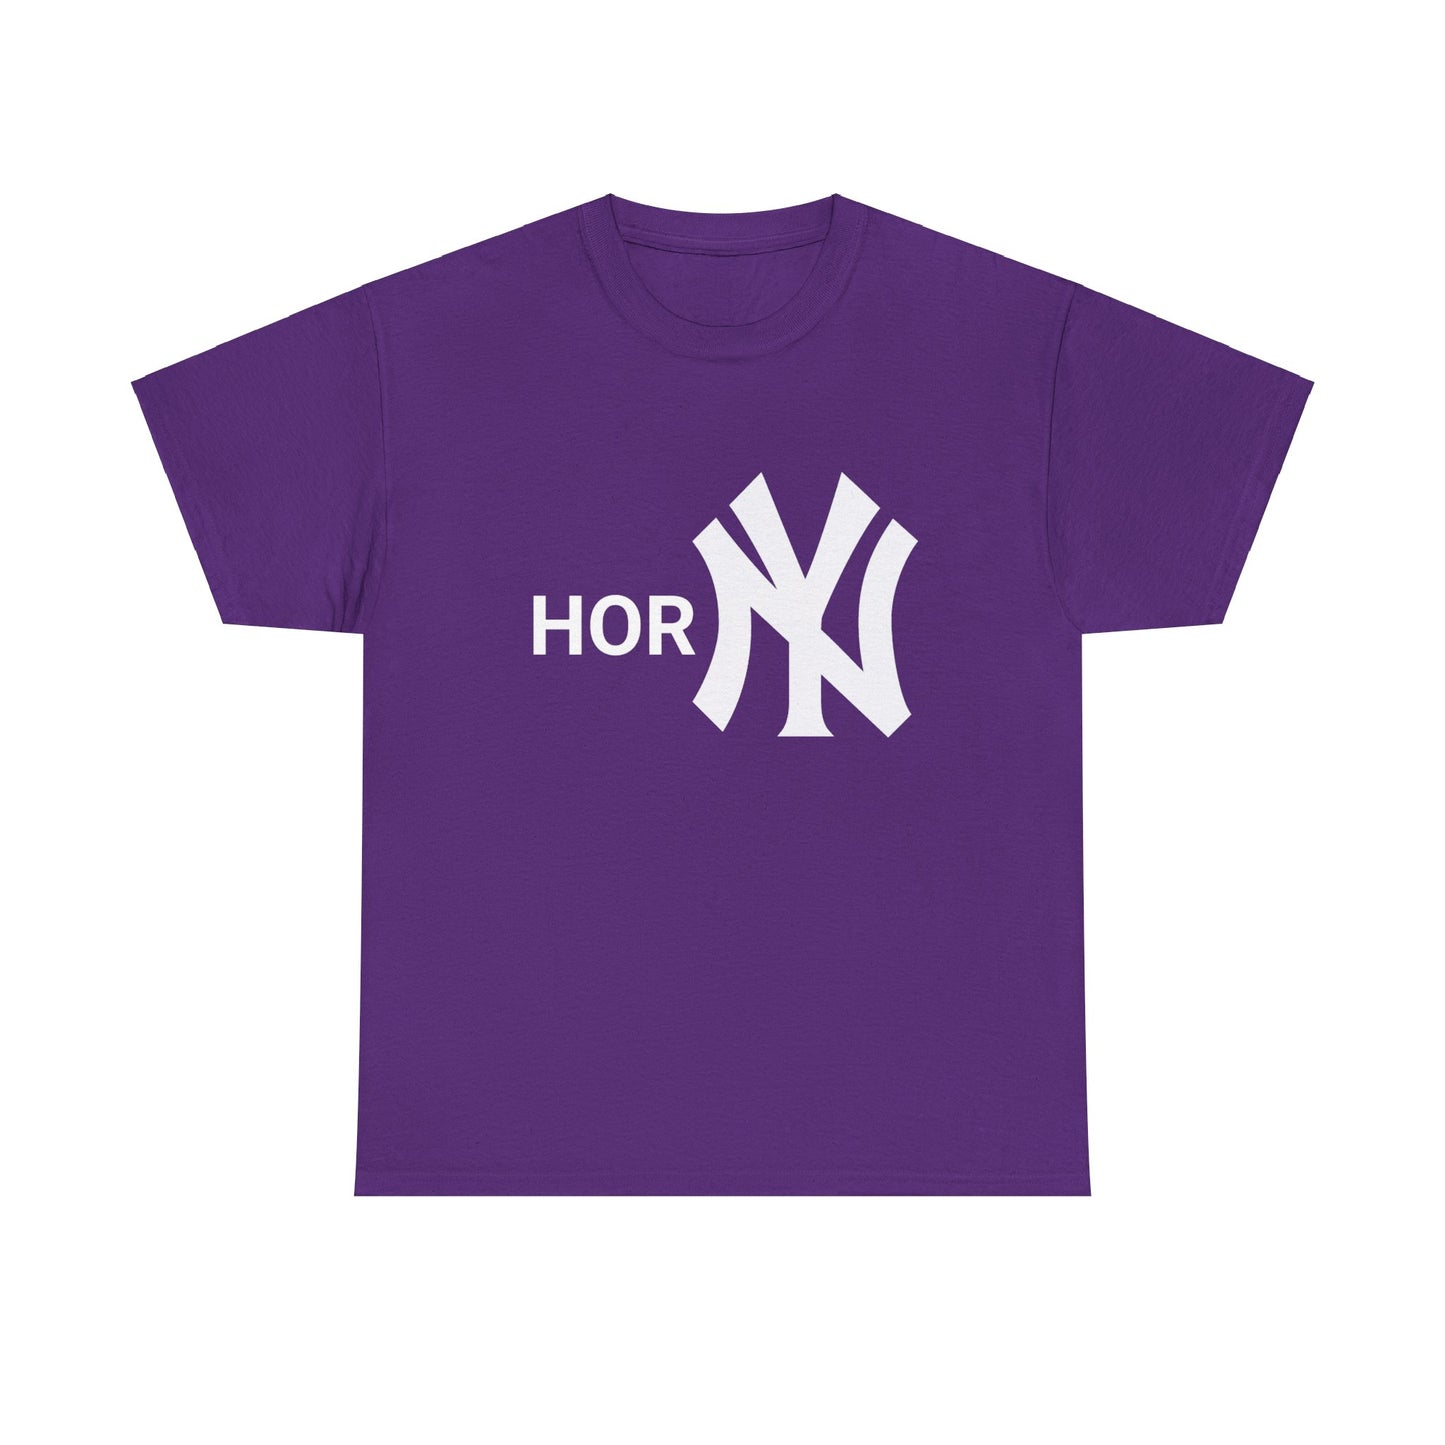 Entdecke unser provokatives T-Shirt mit dem Schriftzug "Horny" und dem ikonischen New York Yankees Logo. Ein Statement für selbstbewusste Fashionistas. Hochwertige Baumwolle für unschlagbaren Komfort. Hol dir jetzt dieses gewagte Statement-Piece! Stylish NY Horny T-Shirt as gift for friends anf fans.